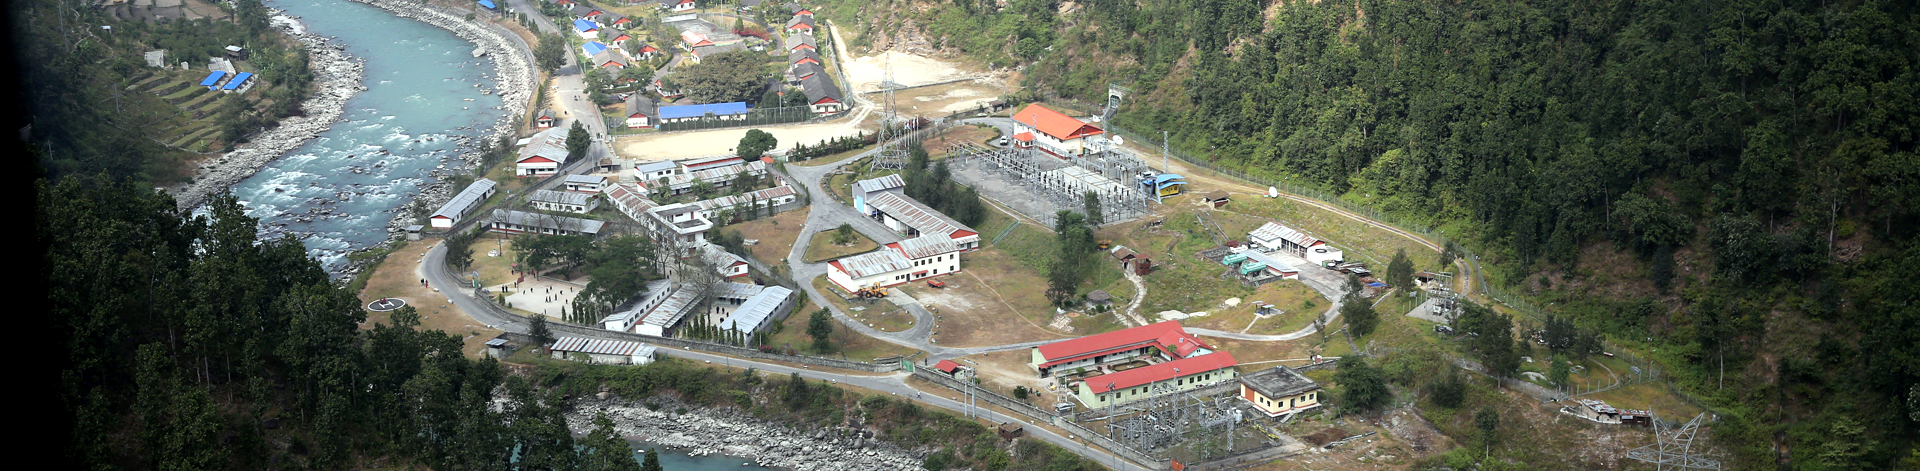 Khimti Plant Power house Site at Kirne